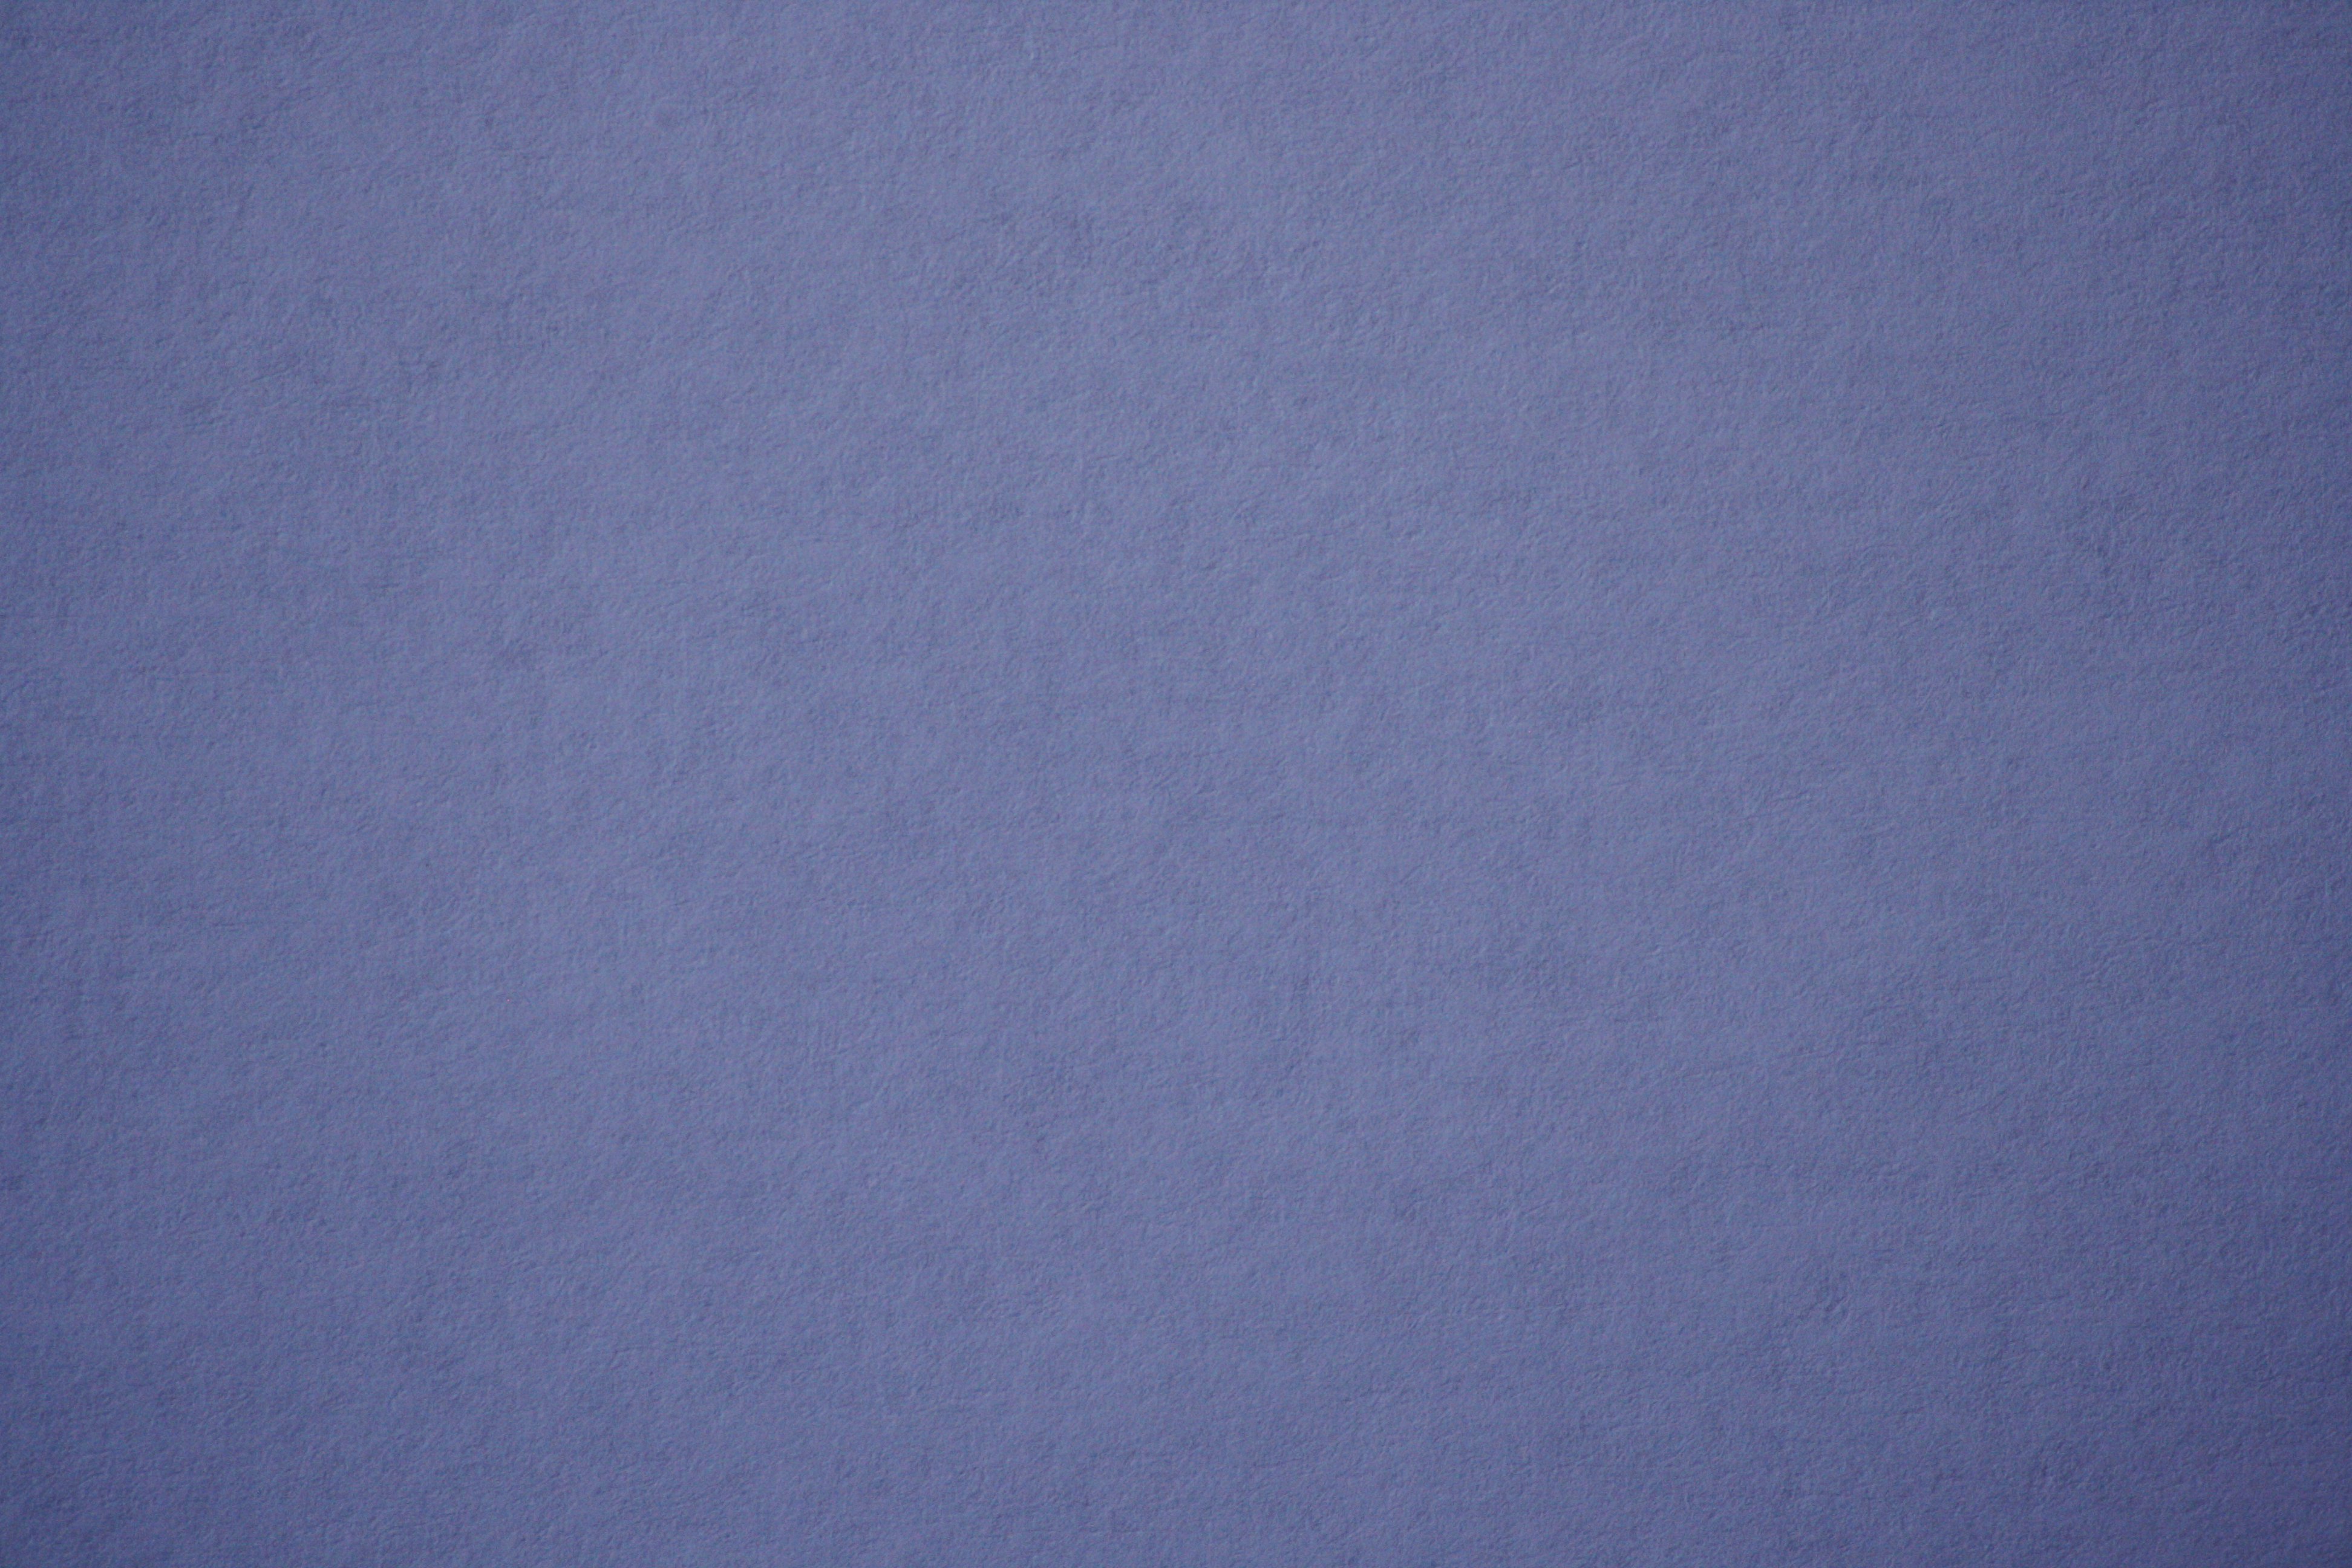 Blue Gray Paper Texture Picture Photograph Photos Public